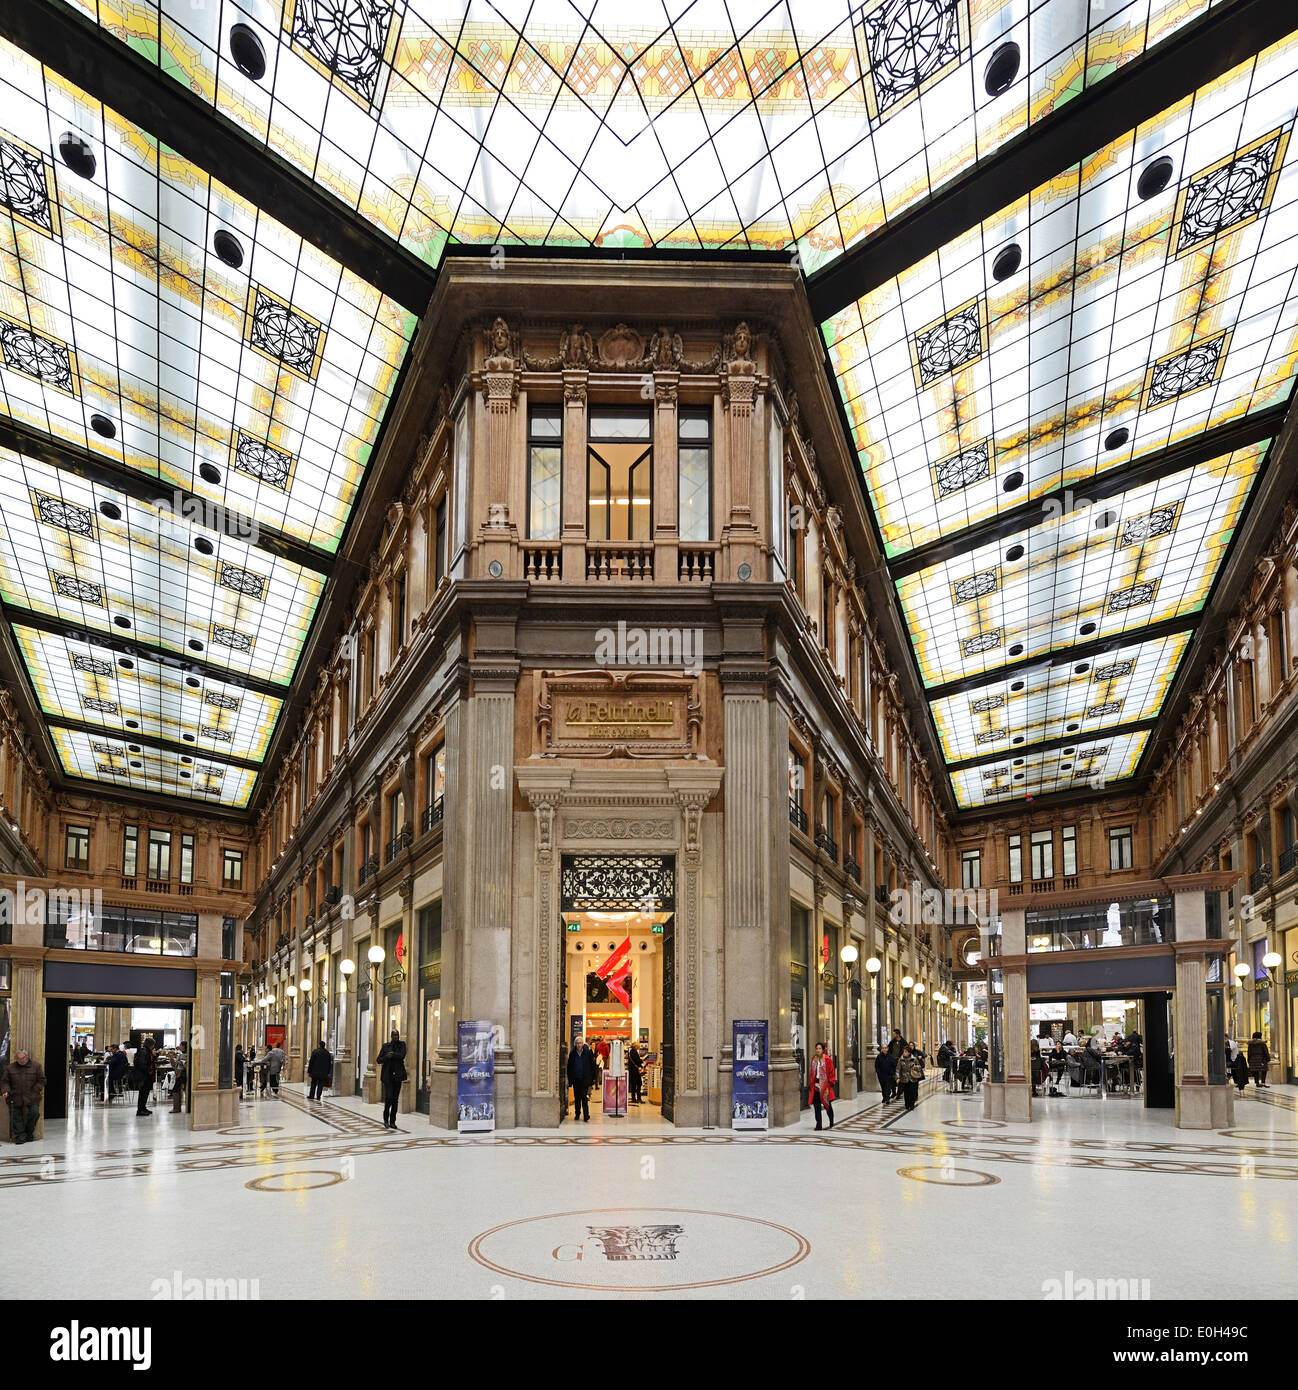 La Rinascente, Shopping sala n stile Art Nouveau, sito Patrimonio Mondiale dell'UNESCO Rome, Roma, Lazio, Lazio, Italia Foto Stock